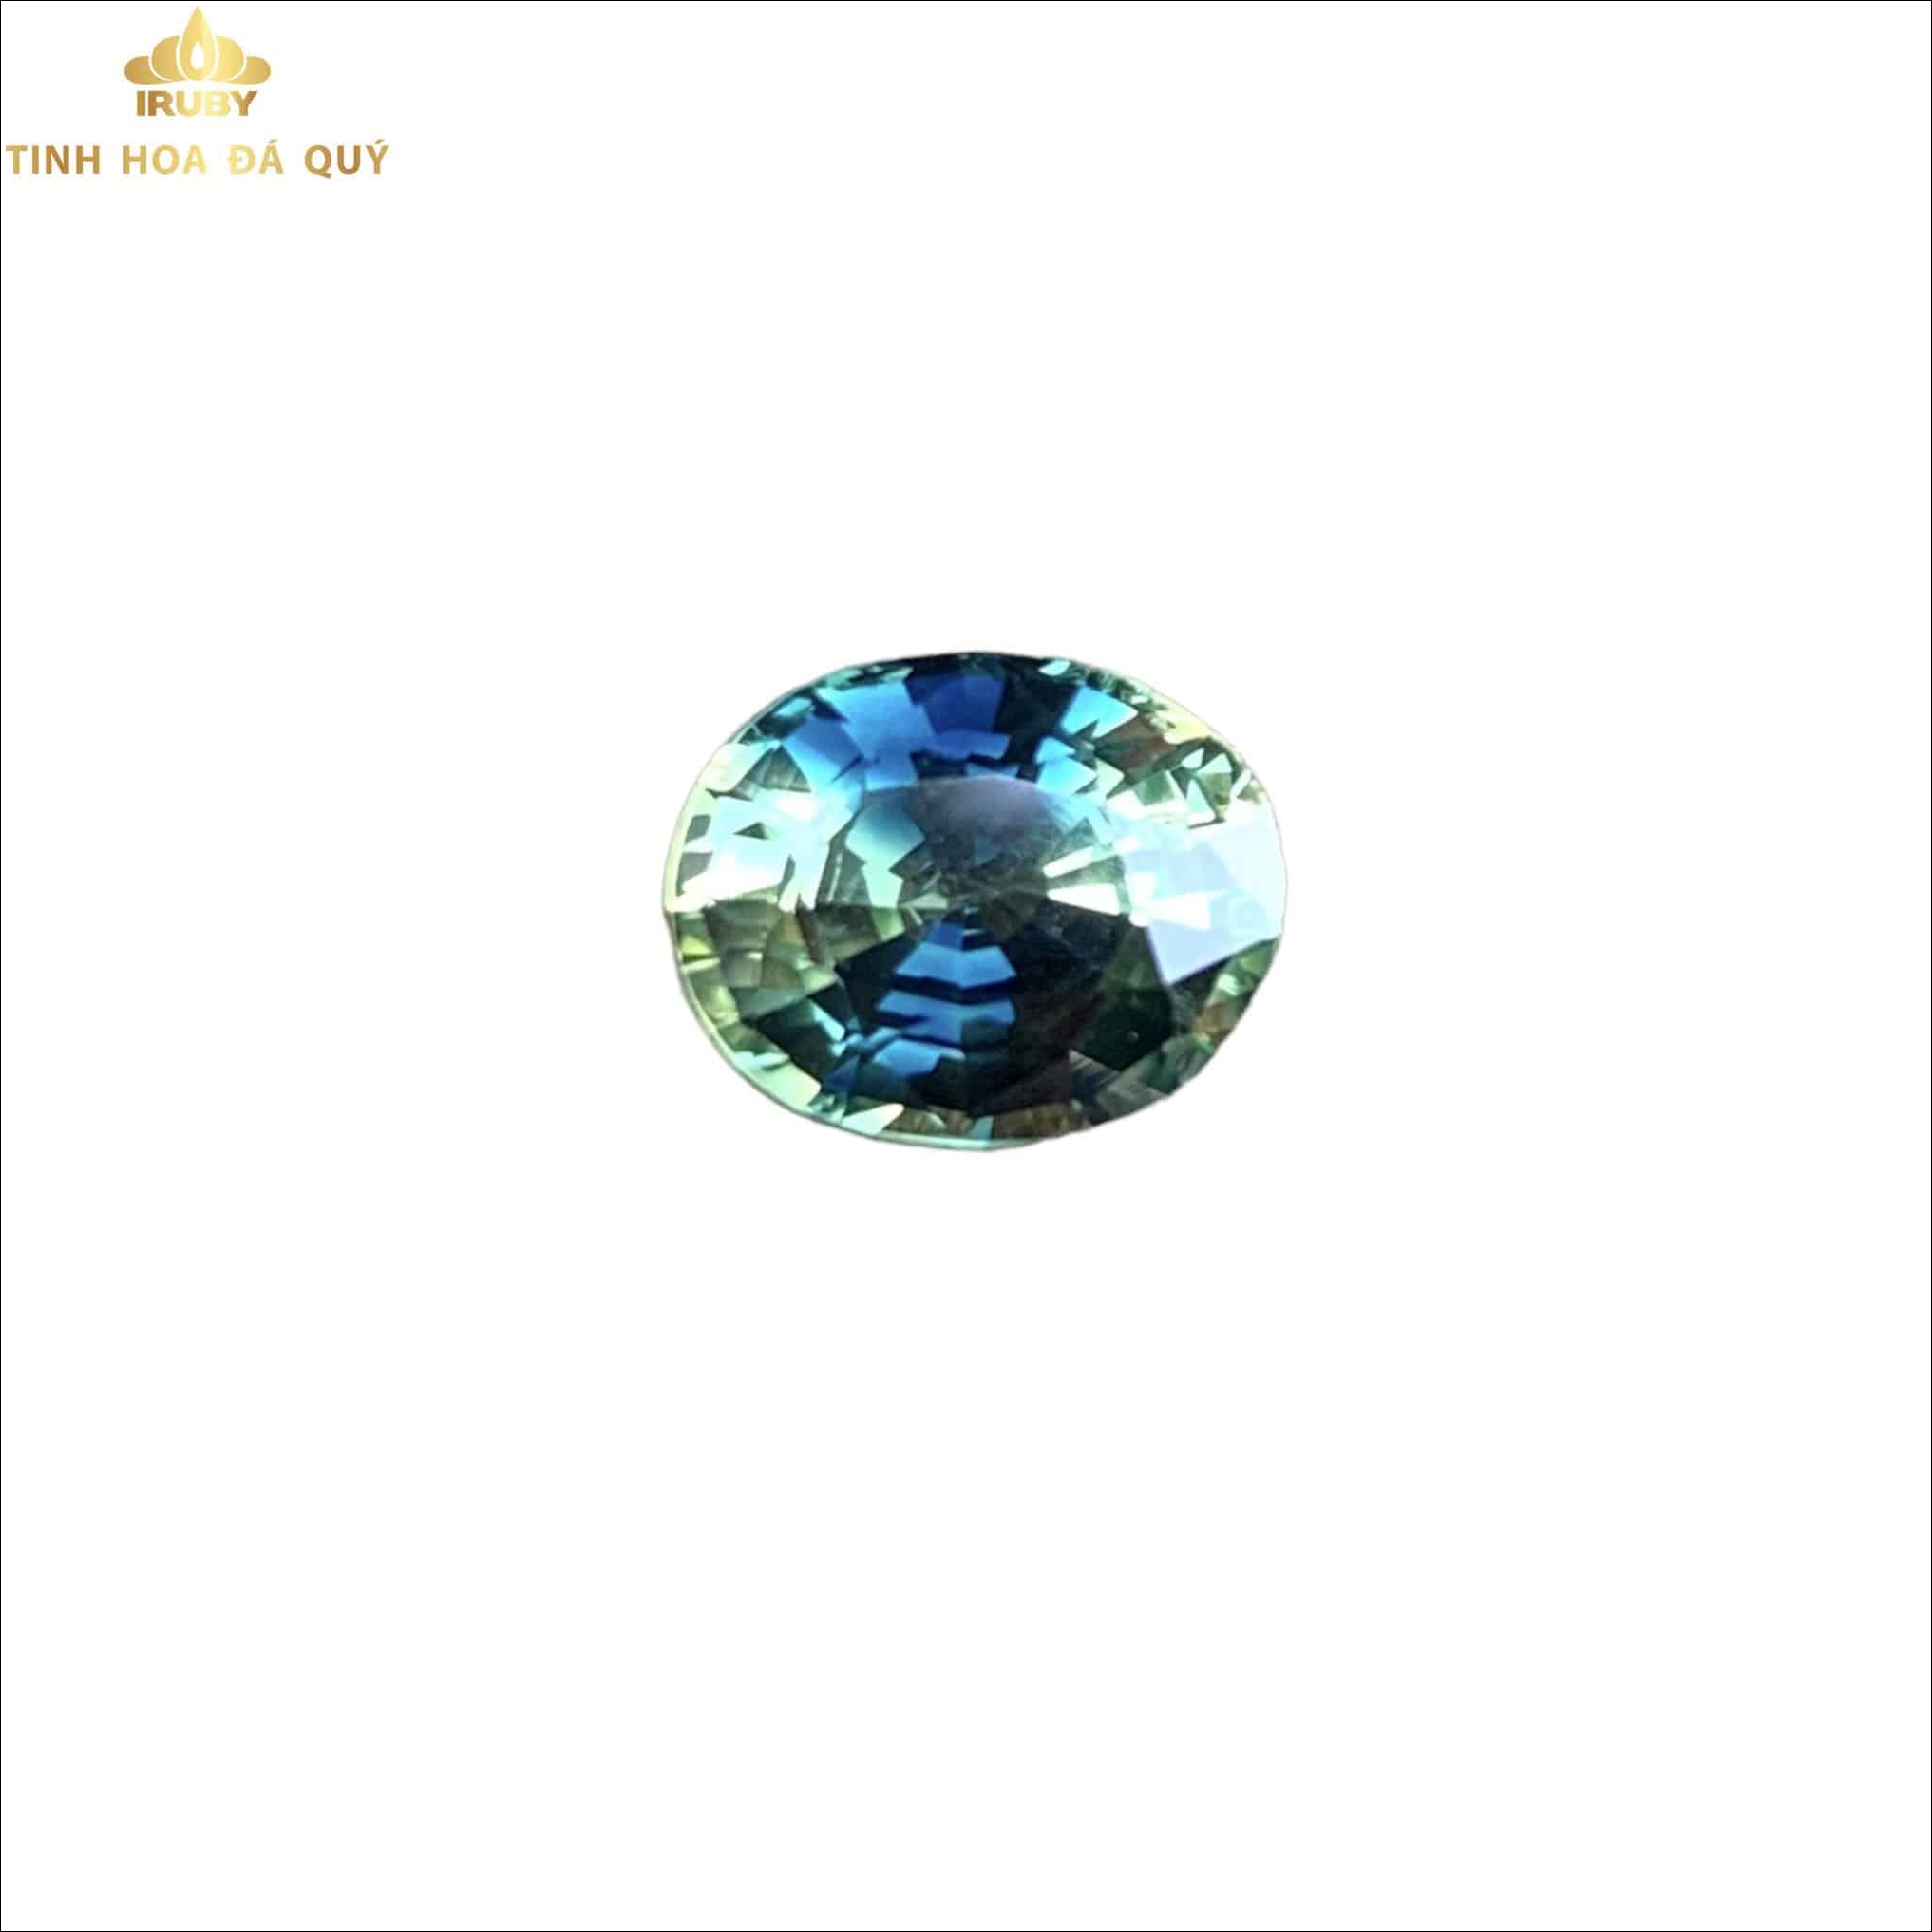 Viên Sapphire bicolor 3 màu độc hiếm đẹp 3ct – IRSP 22113